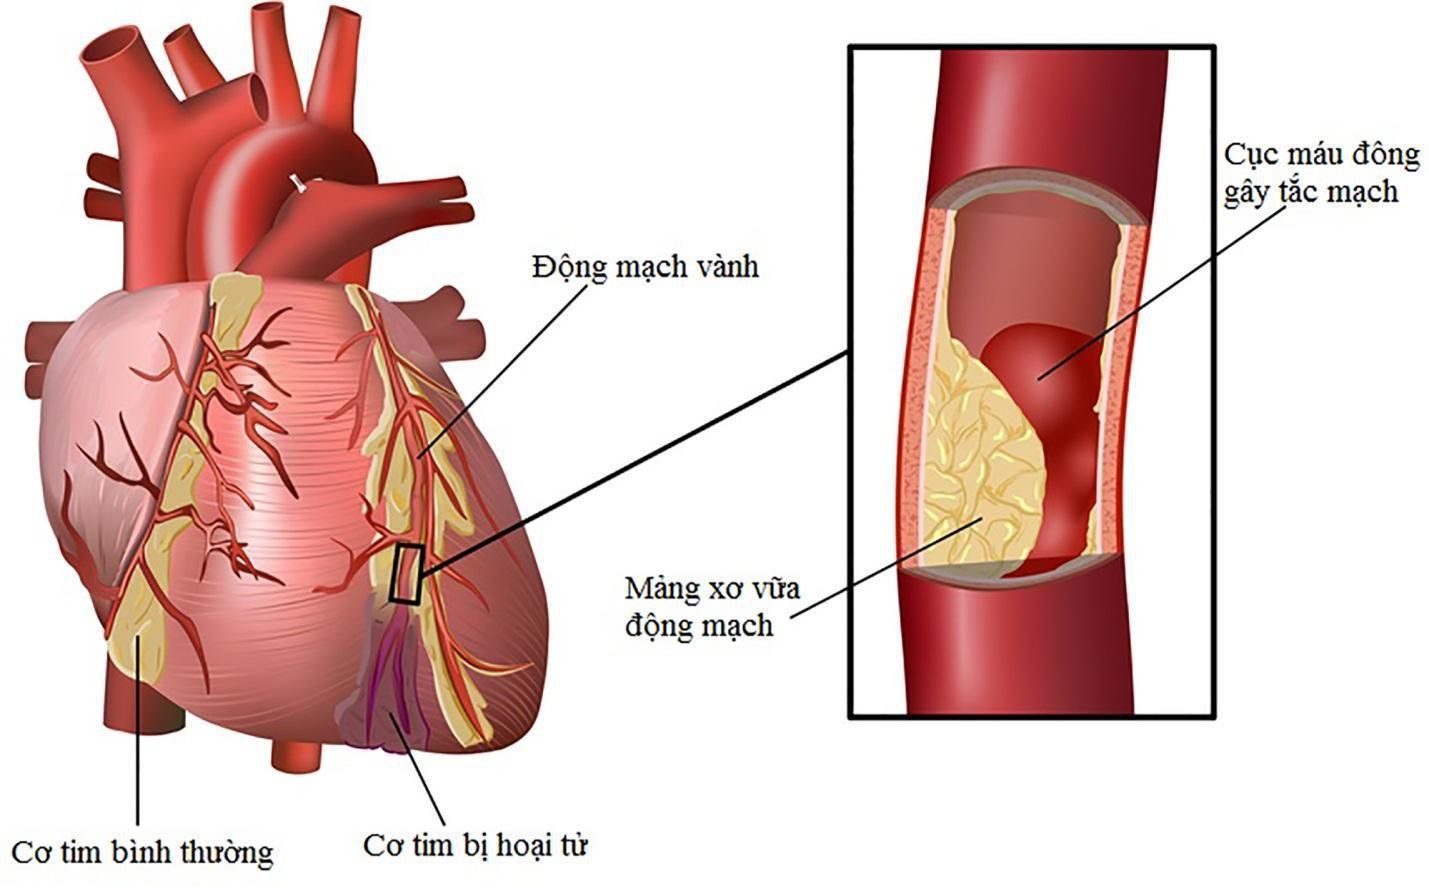 Nhồi máu cơ tim khác gì đột quỵ?